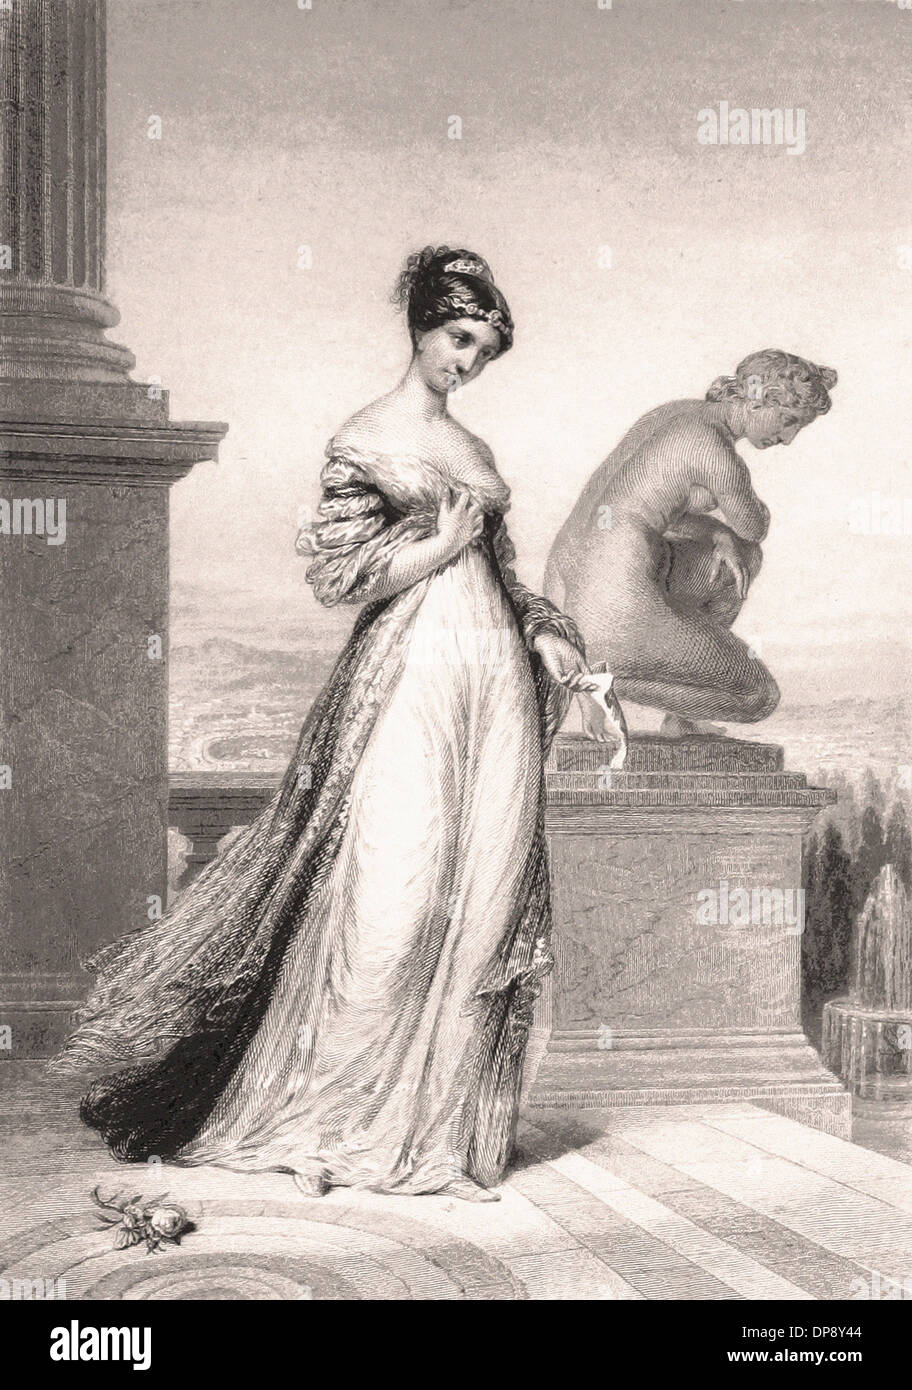 Princesse Pauline Borghese sisiter de Napoléon Bonaparte - Gravure XIX ème siècle français Banque D'Images